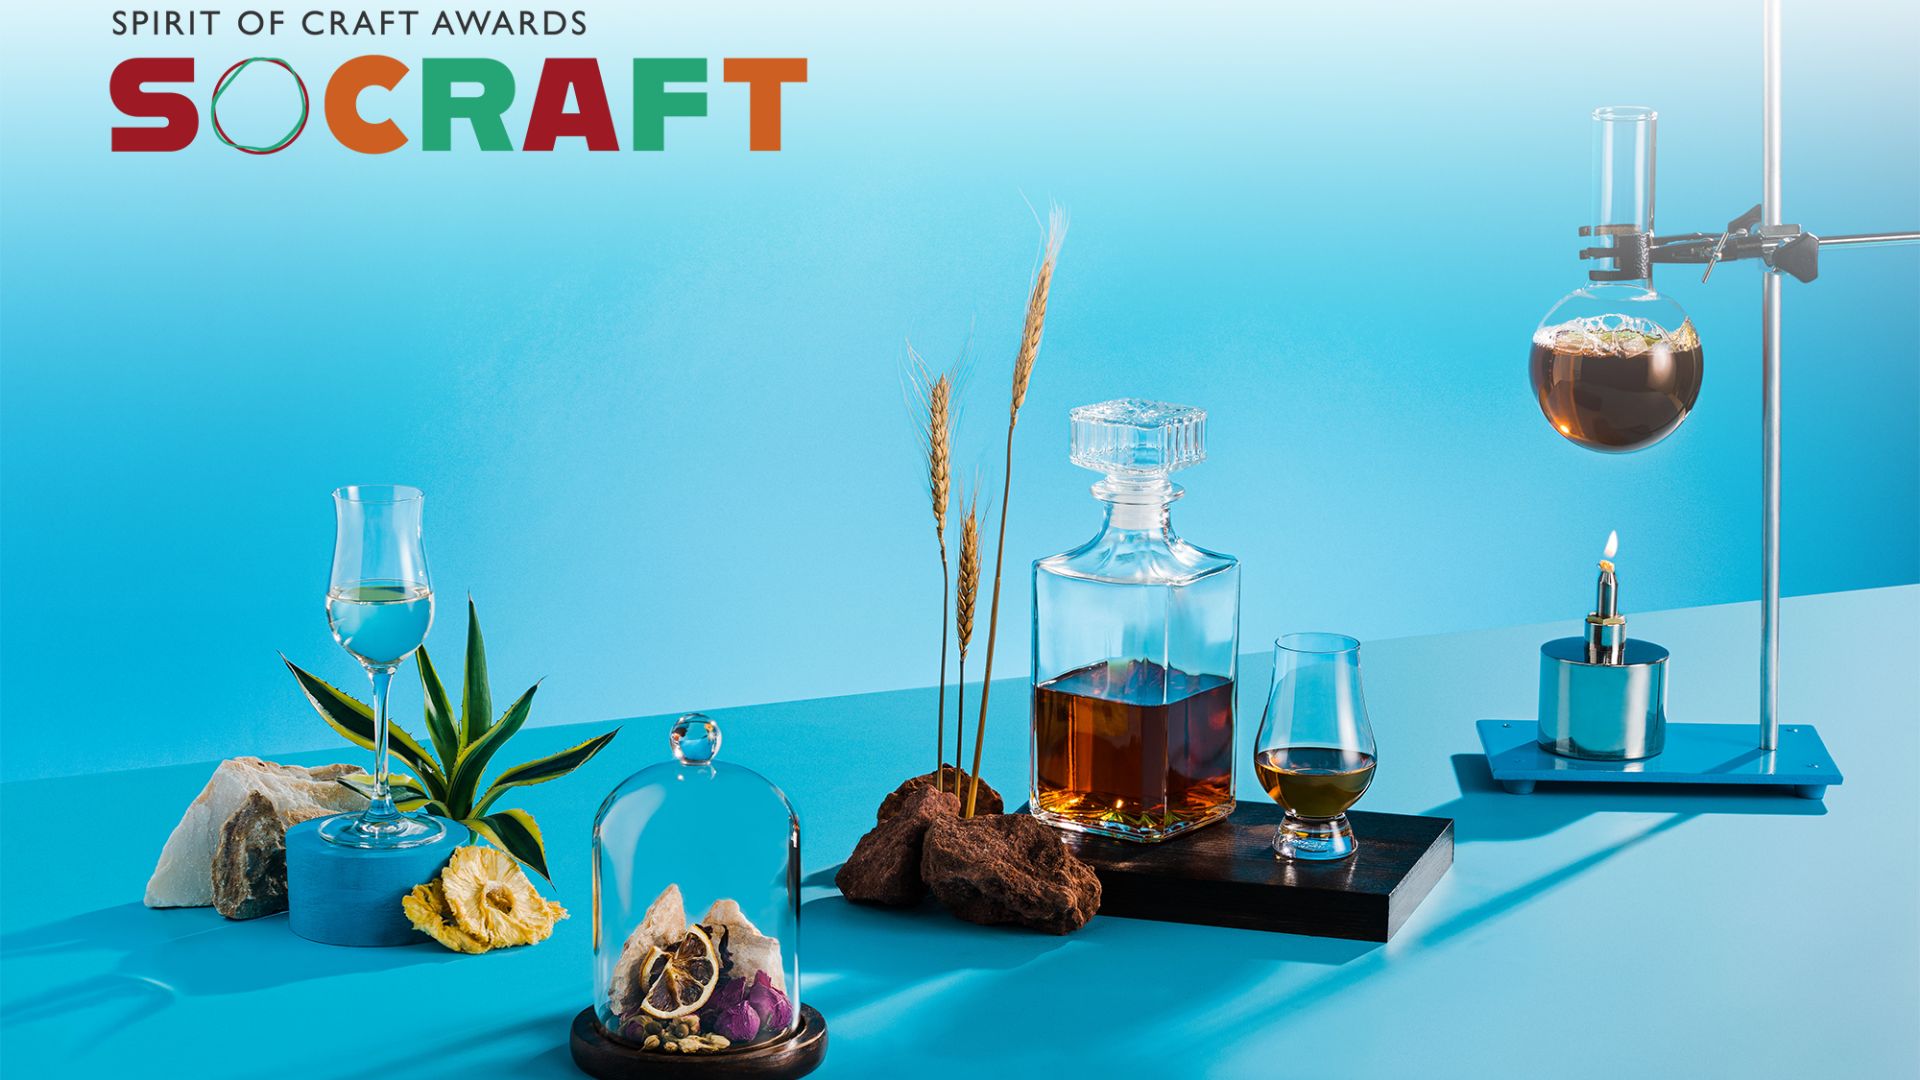 SOCraft - Giải thưởng dành cho nghệ thuật chế tạo rượu thủ công